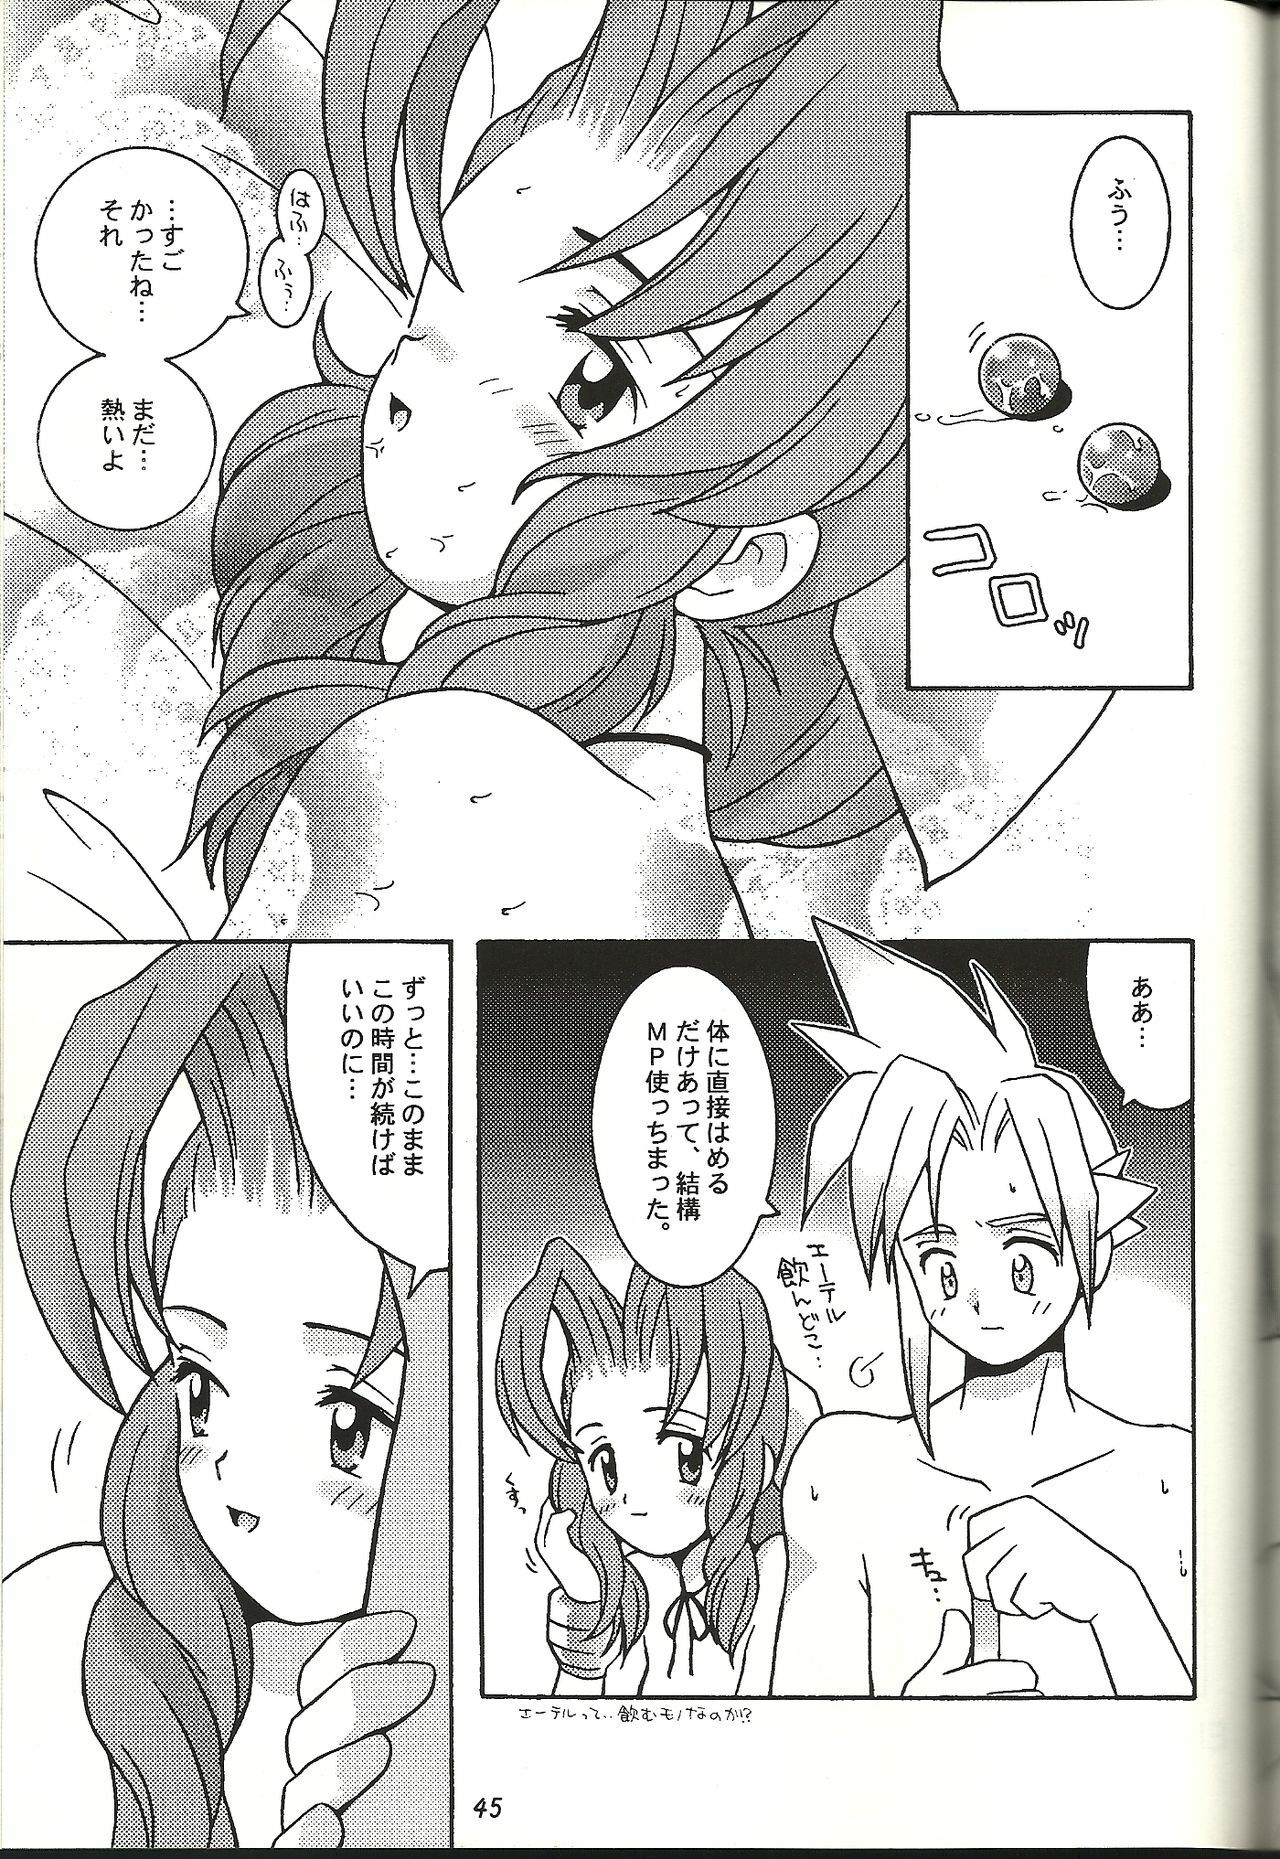 (CR21) [Bakuhatsu BRS. (B.Tarou)] Renai Shiyou (Final Fantasy VII) page 45 full